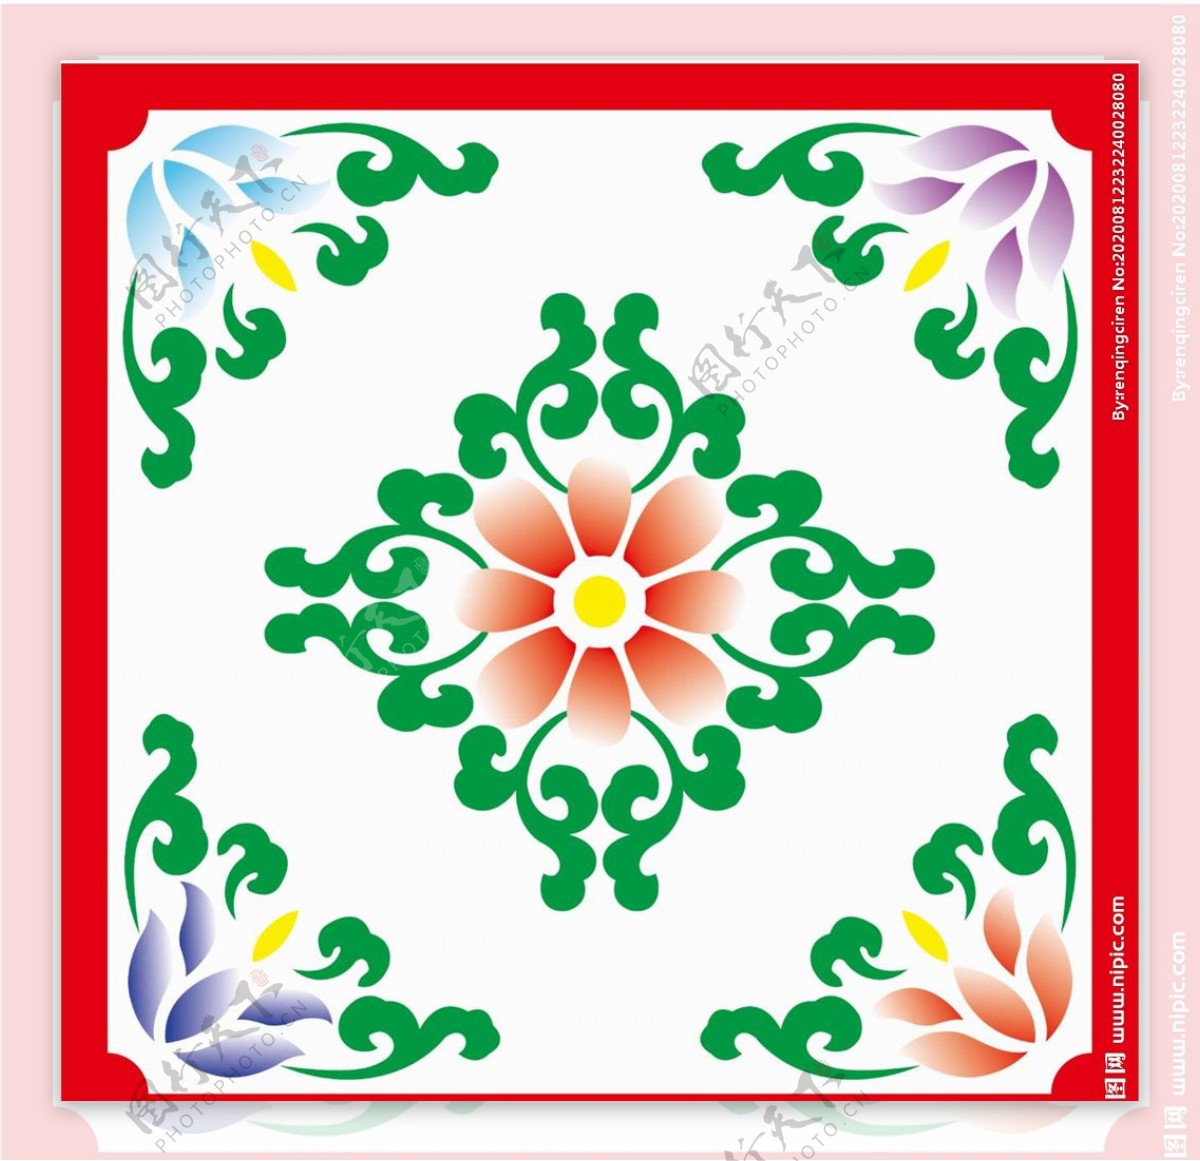 藏式花纹素材